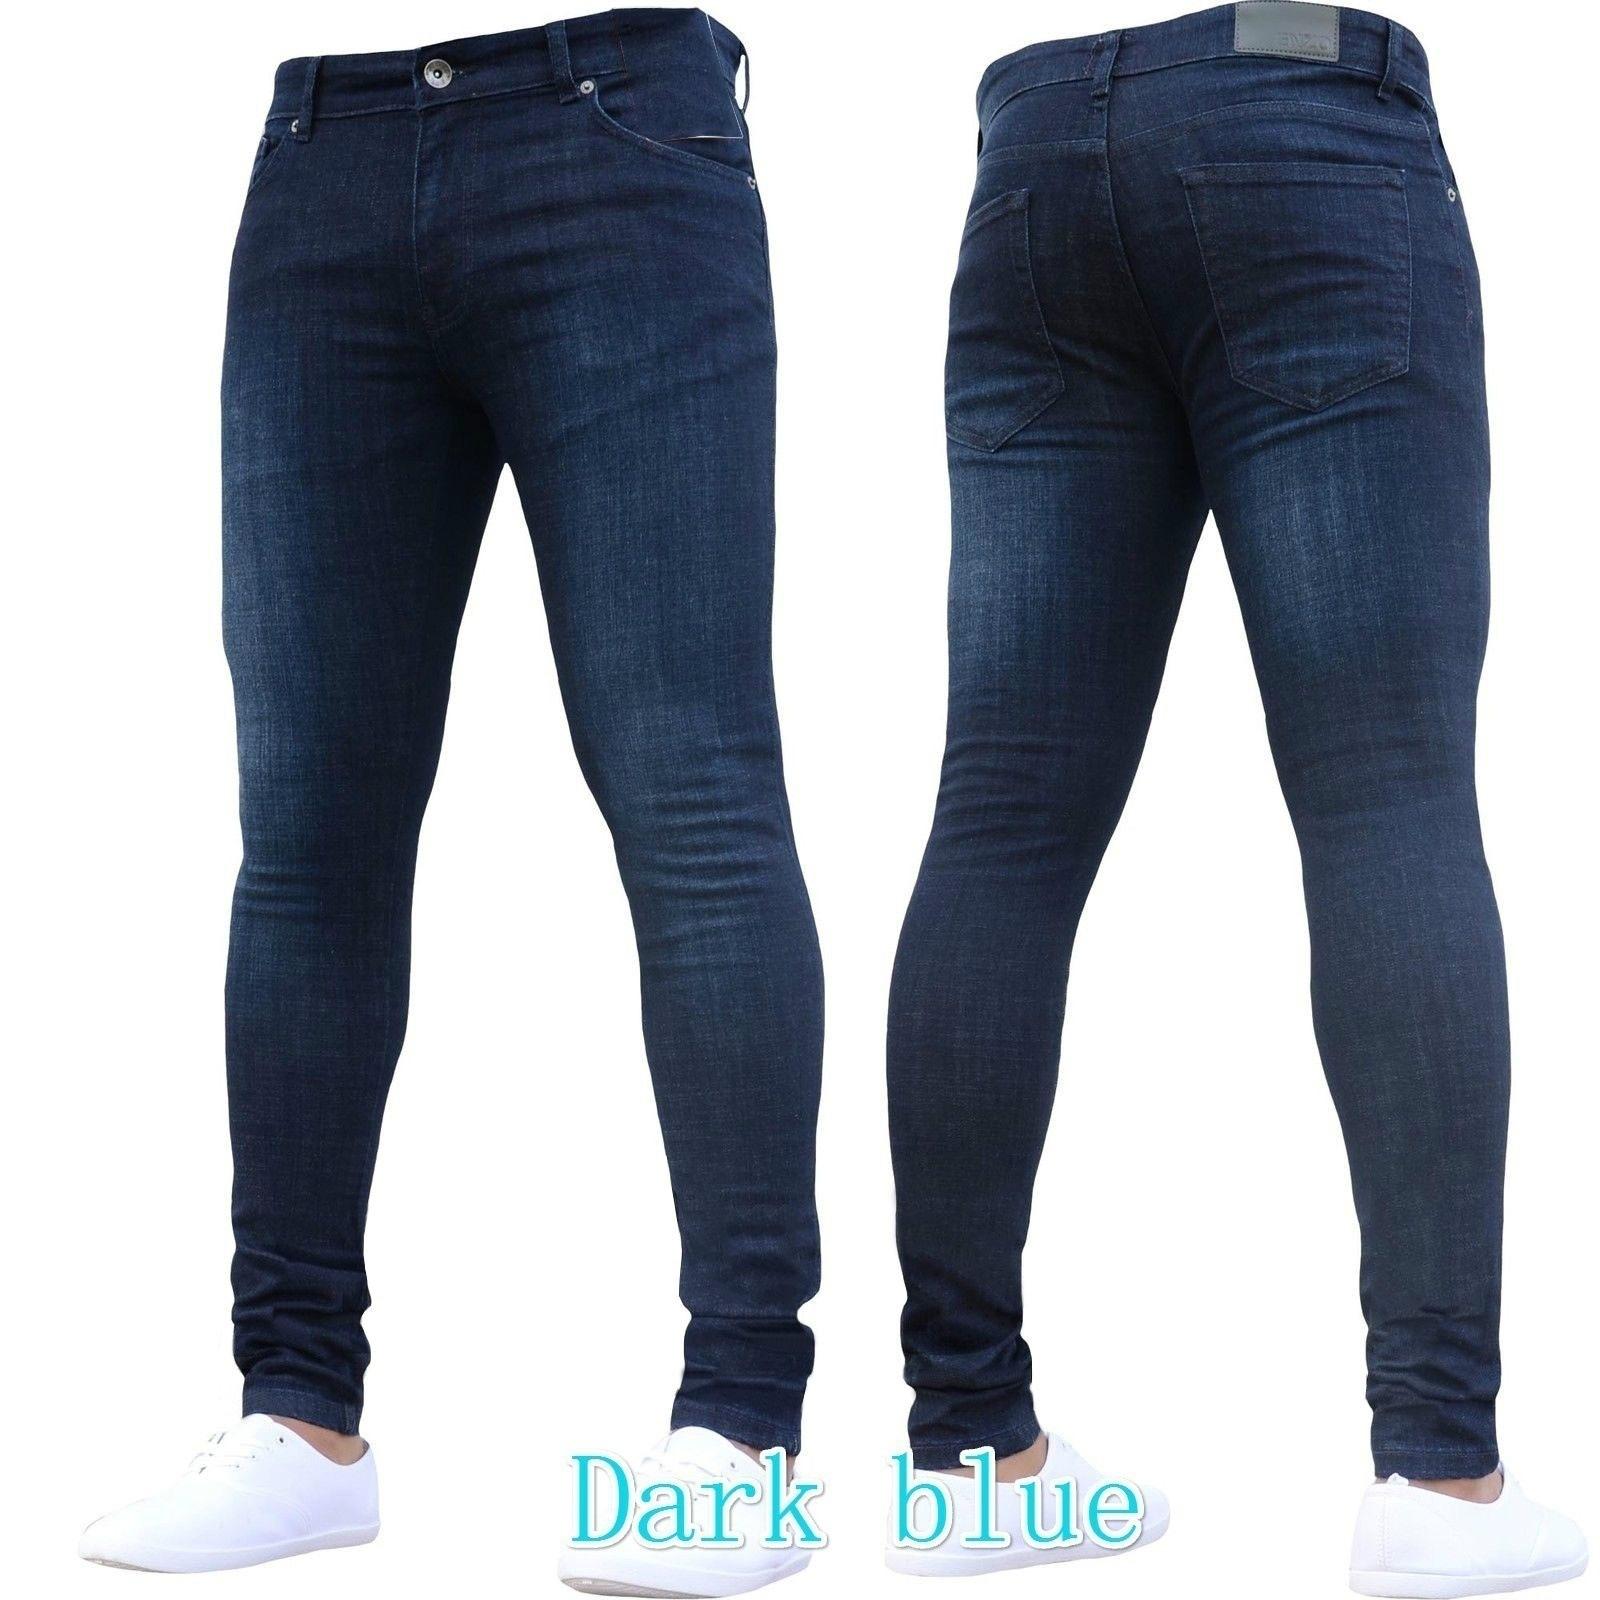 dark maong pants